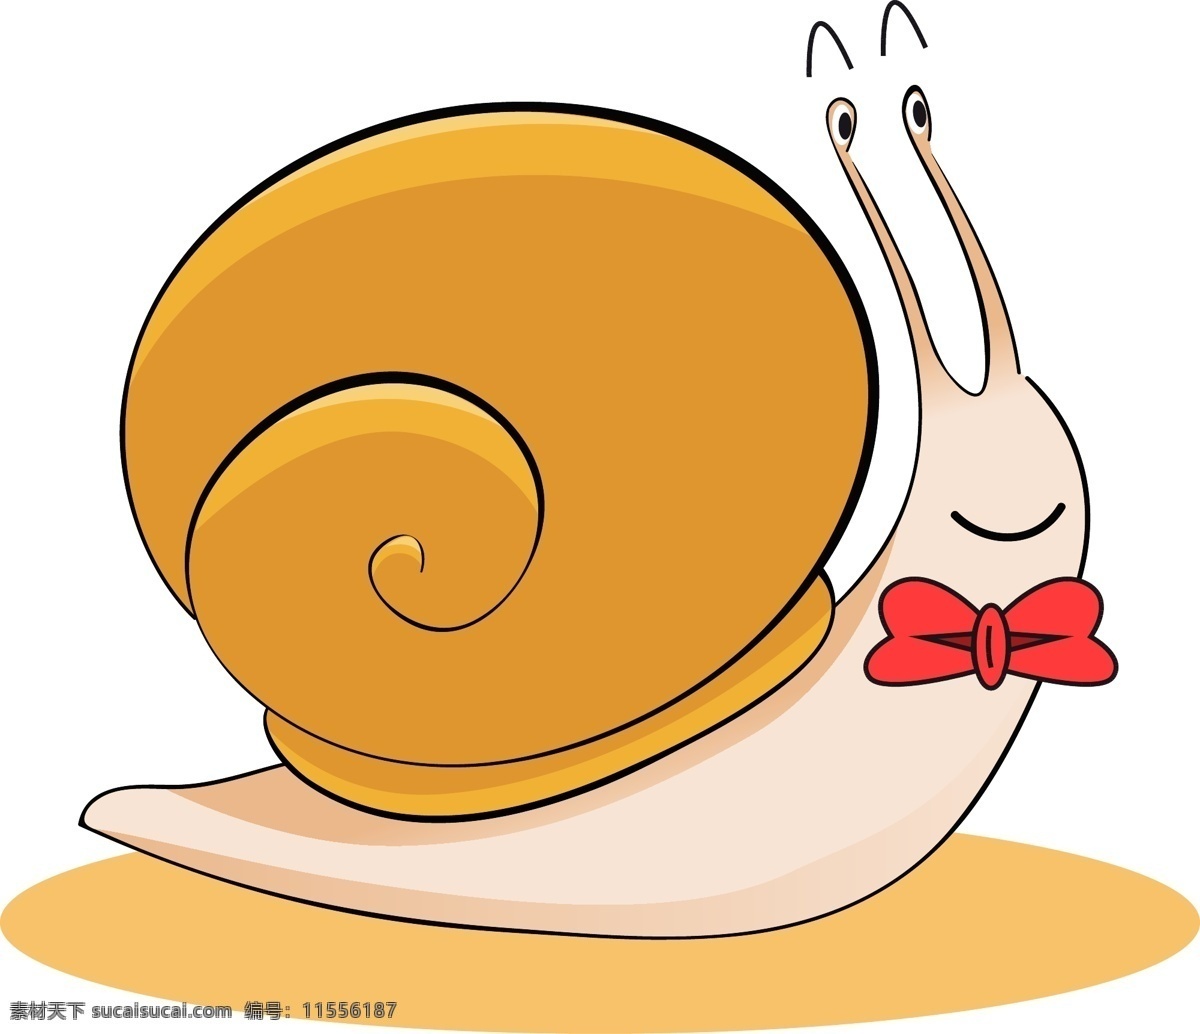 矢量 手绘 卡通 蜗牛 黄色 红色领结 肤色 蜗牛壳 微笑 开心 触须 眼睛 可爱 免扣